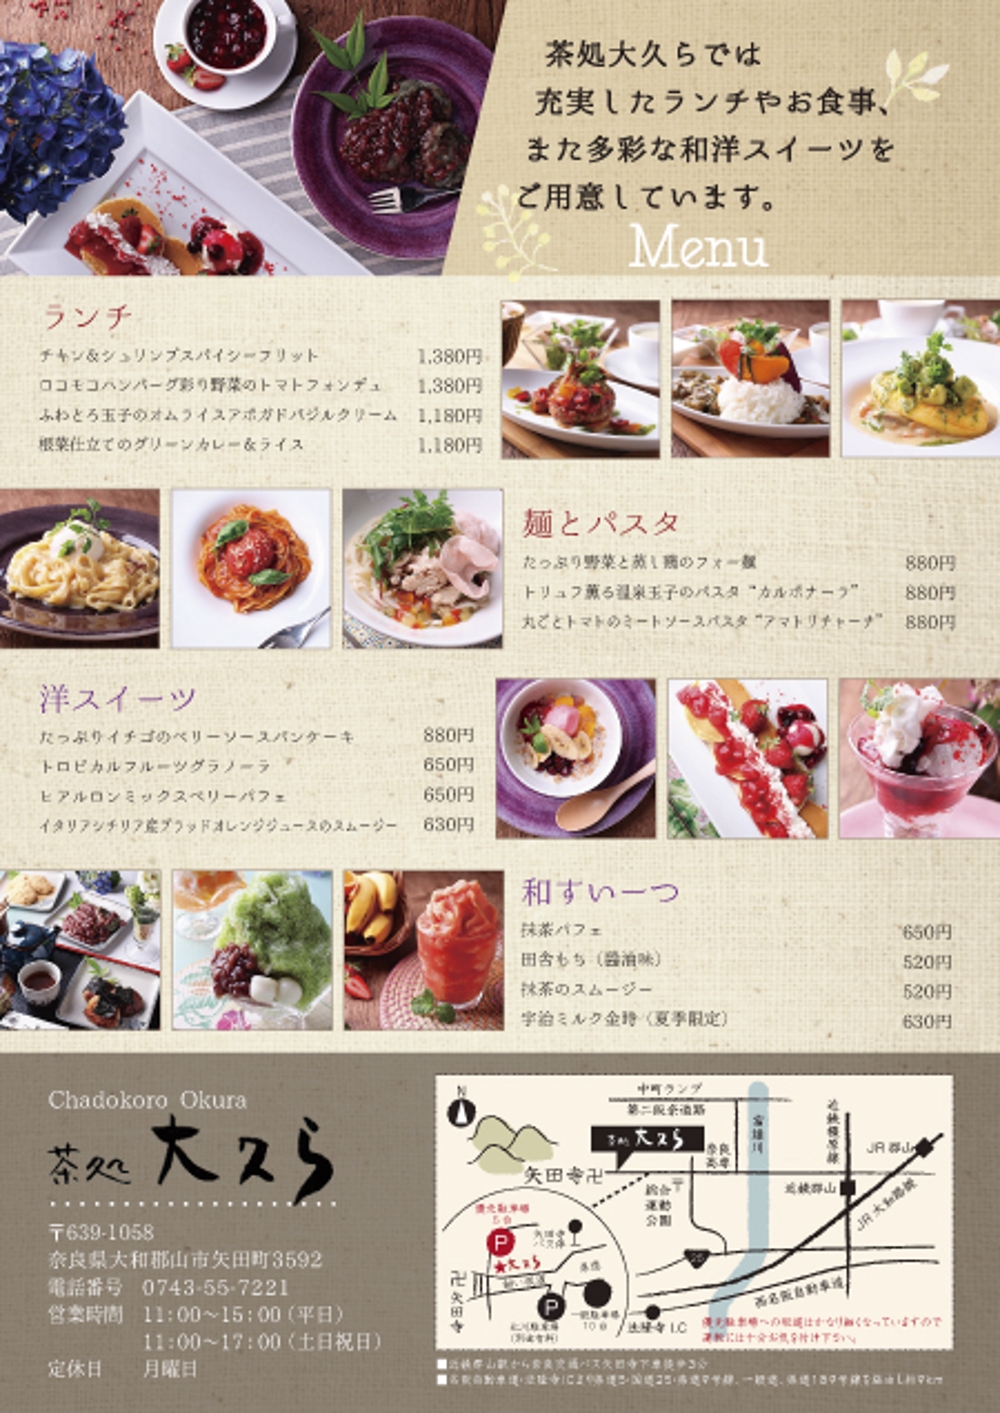 和カフェ「茶処大久ら」店舗リニューアル 集客チラシの作成をお願いします。